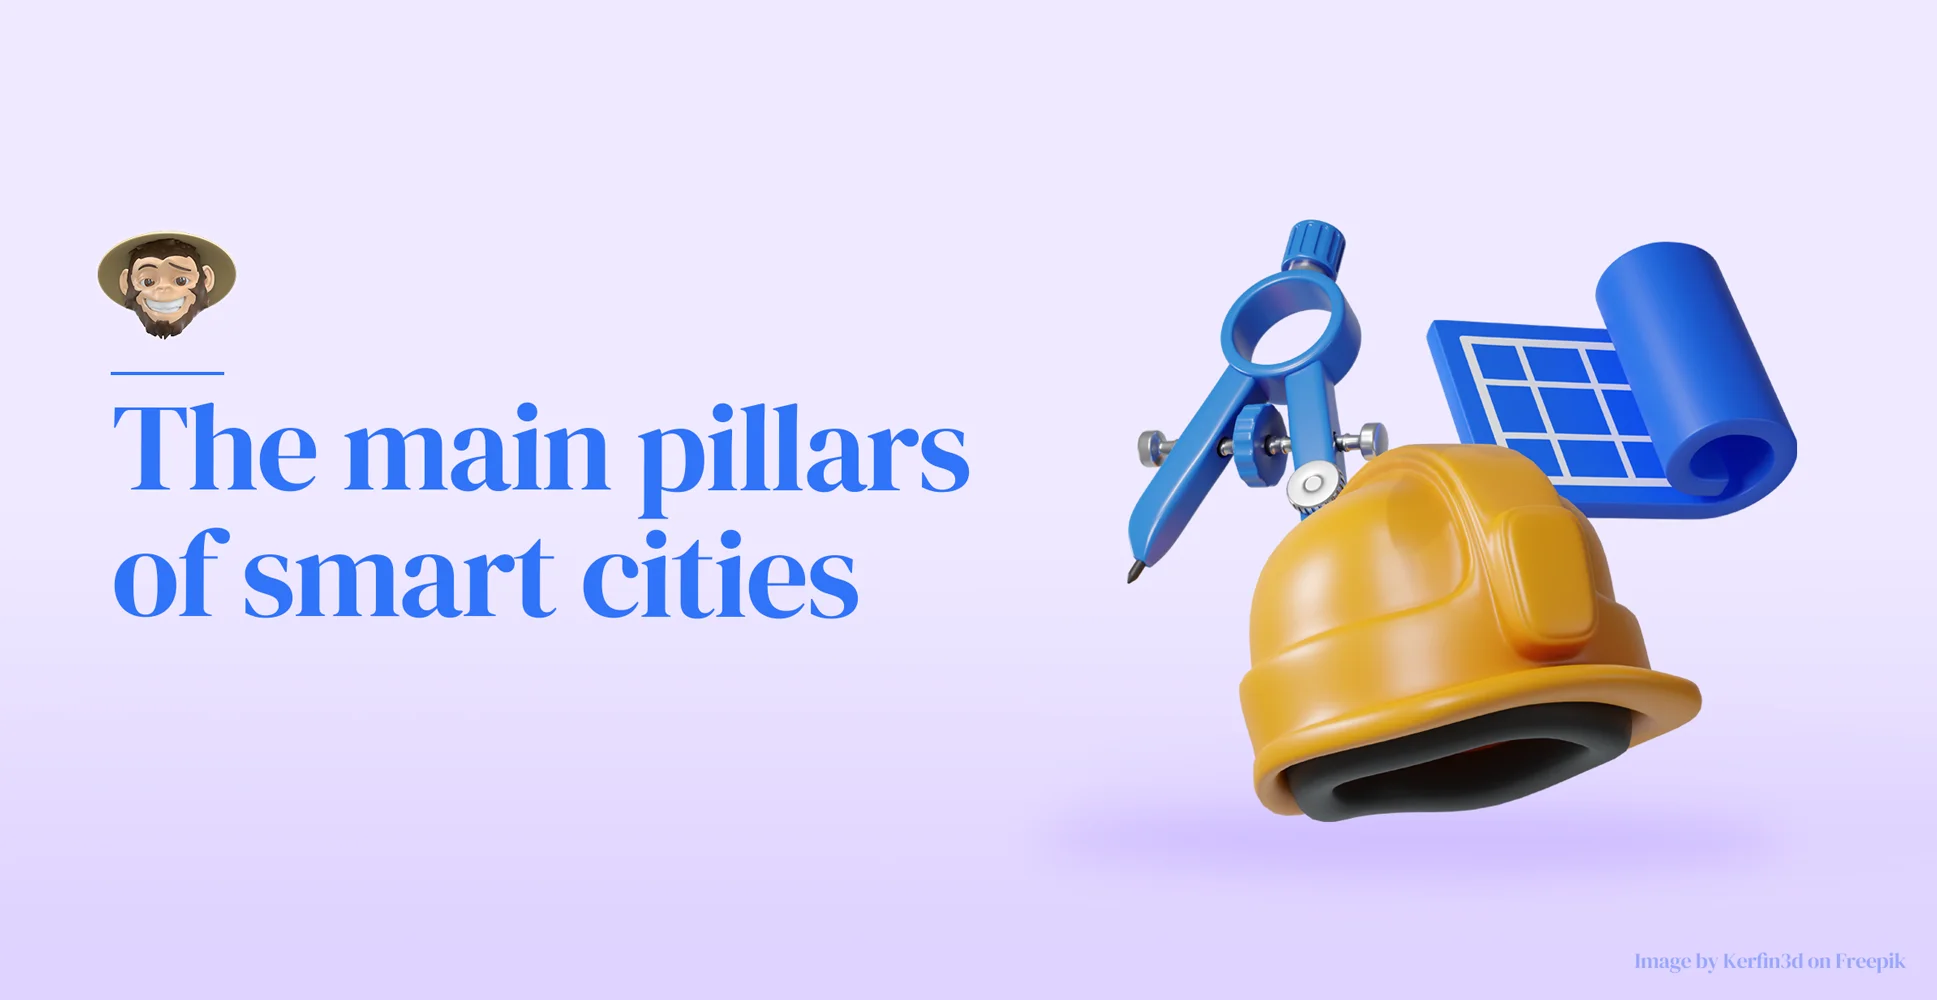 Los principales pilares de las ciudades inteligentes